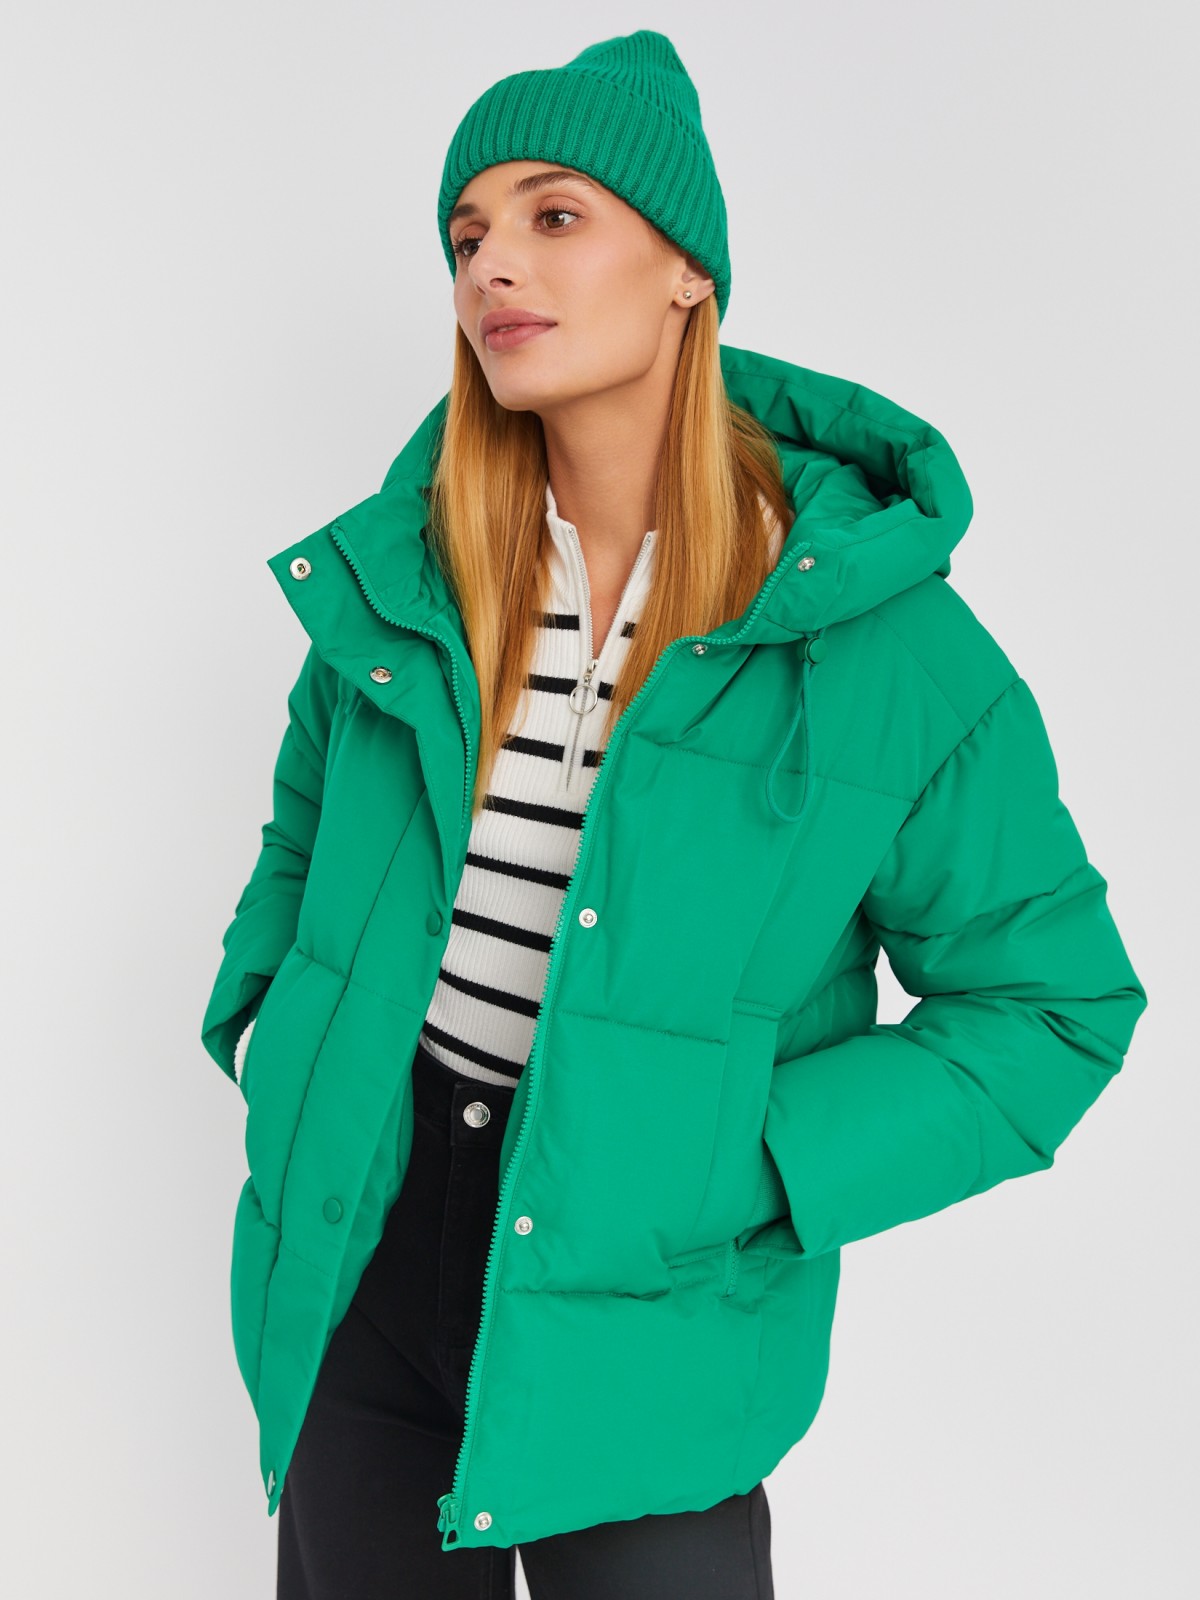 Тёплая стёганая куртка с капюшоном и удлинёнными внутренними манжетами zolla 023335112274, цвет зеленый, размер M - фото 1